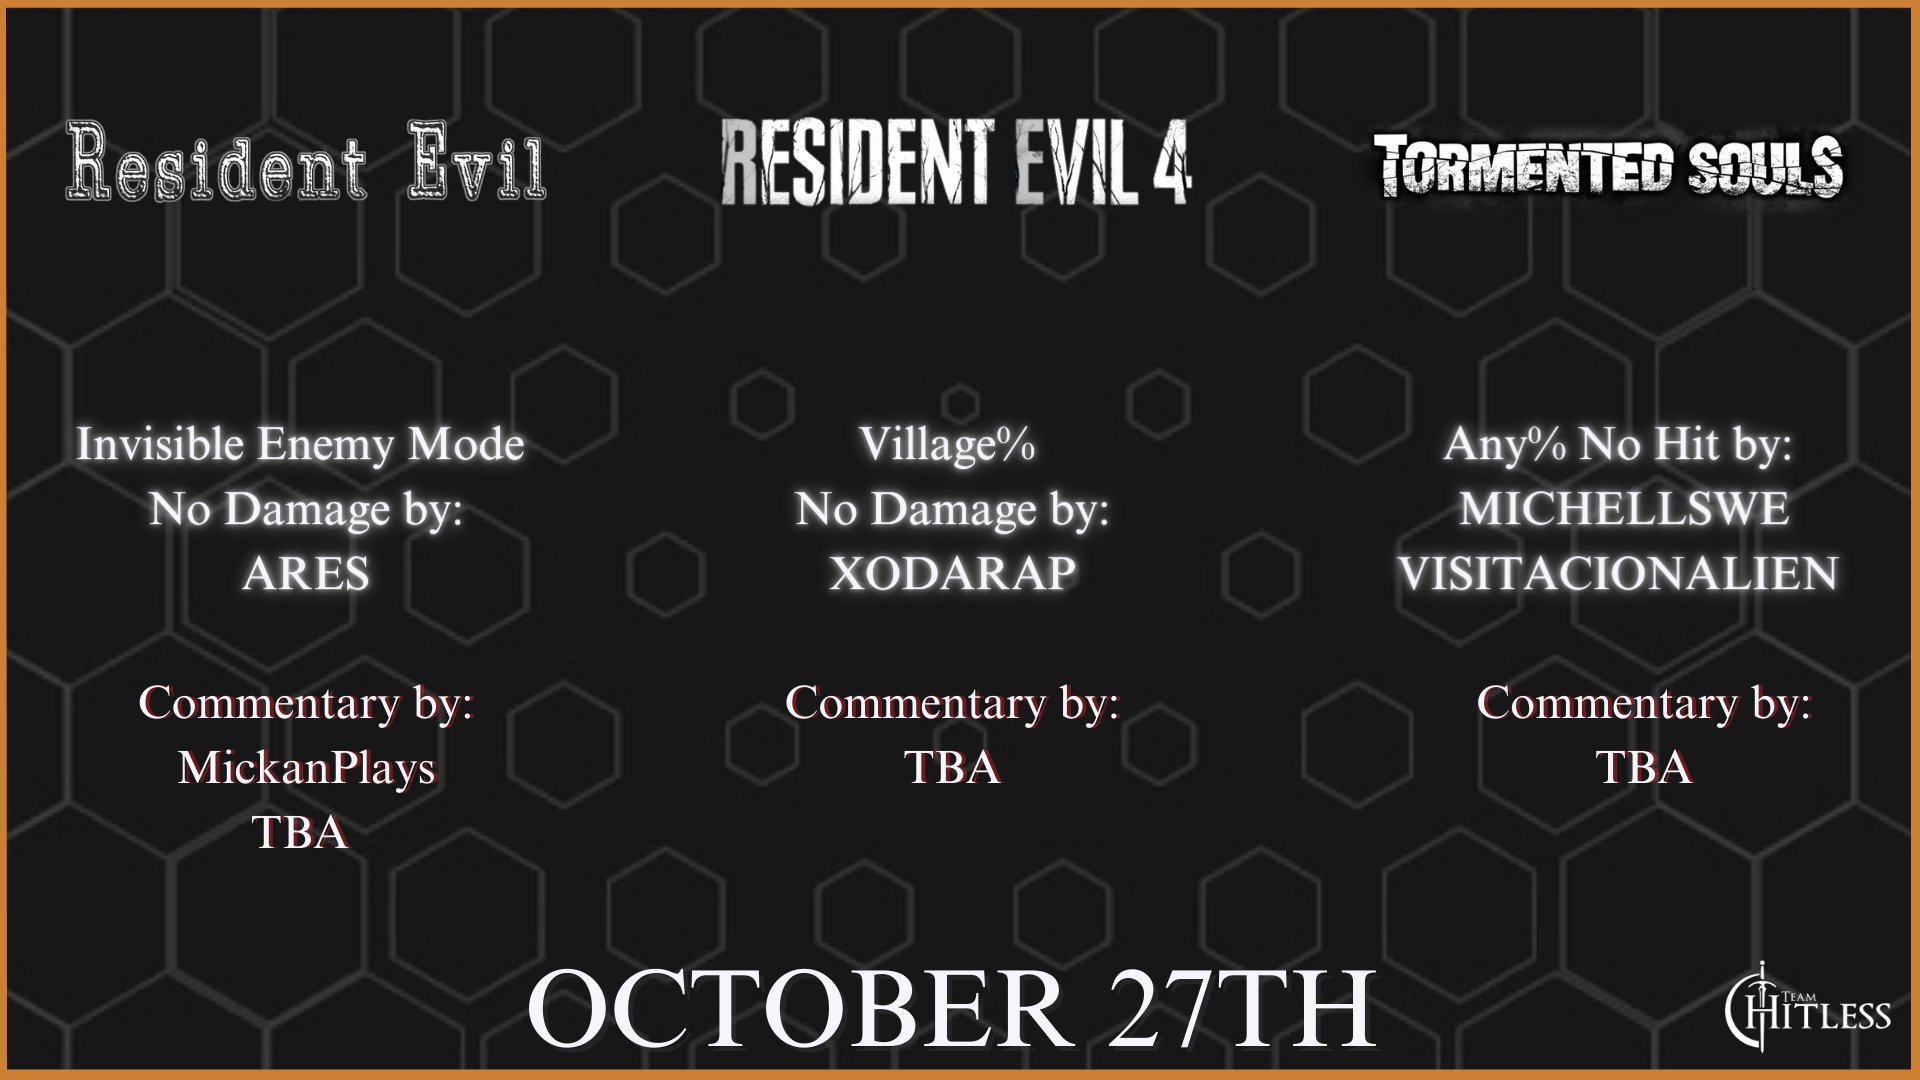 Resident Evil 4 - Team Hitless